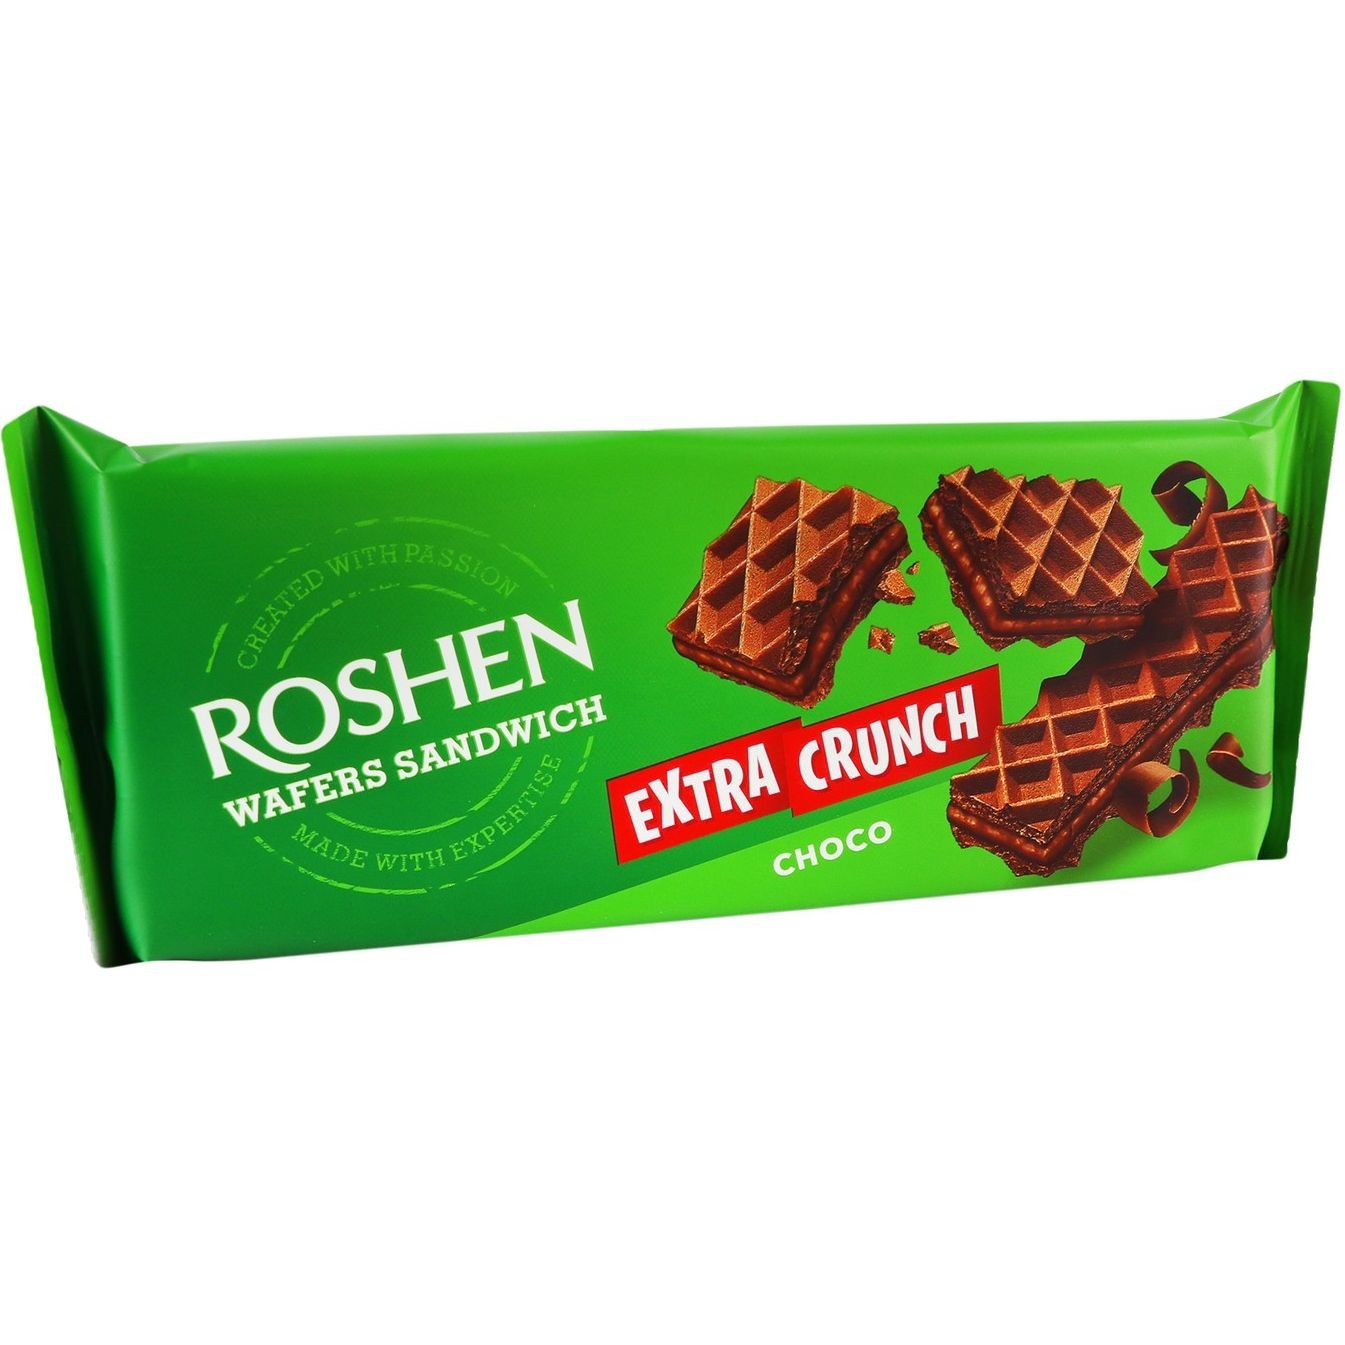 Вафли Roshen Wafers Sandwich Extra Crunch Choco 142 г (917336) - фото 3